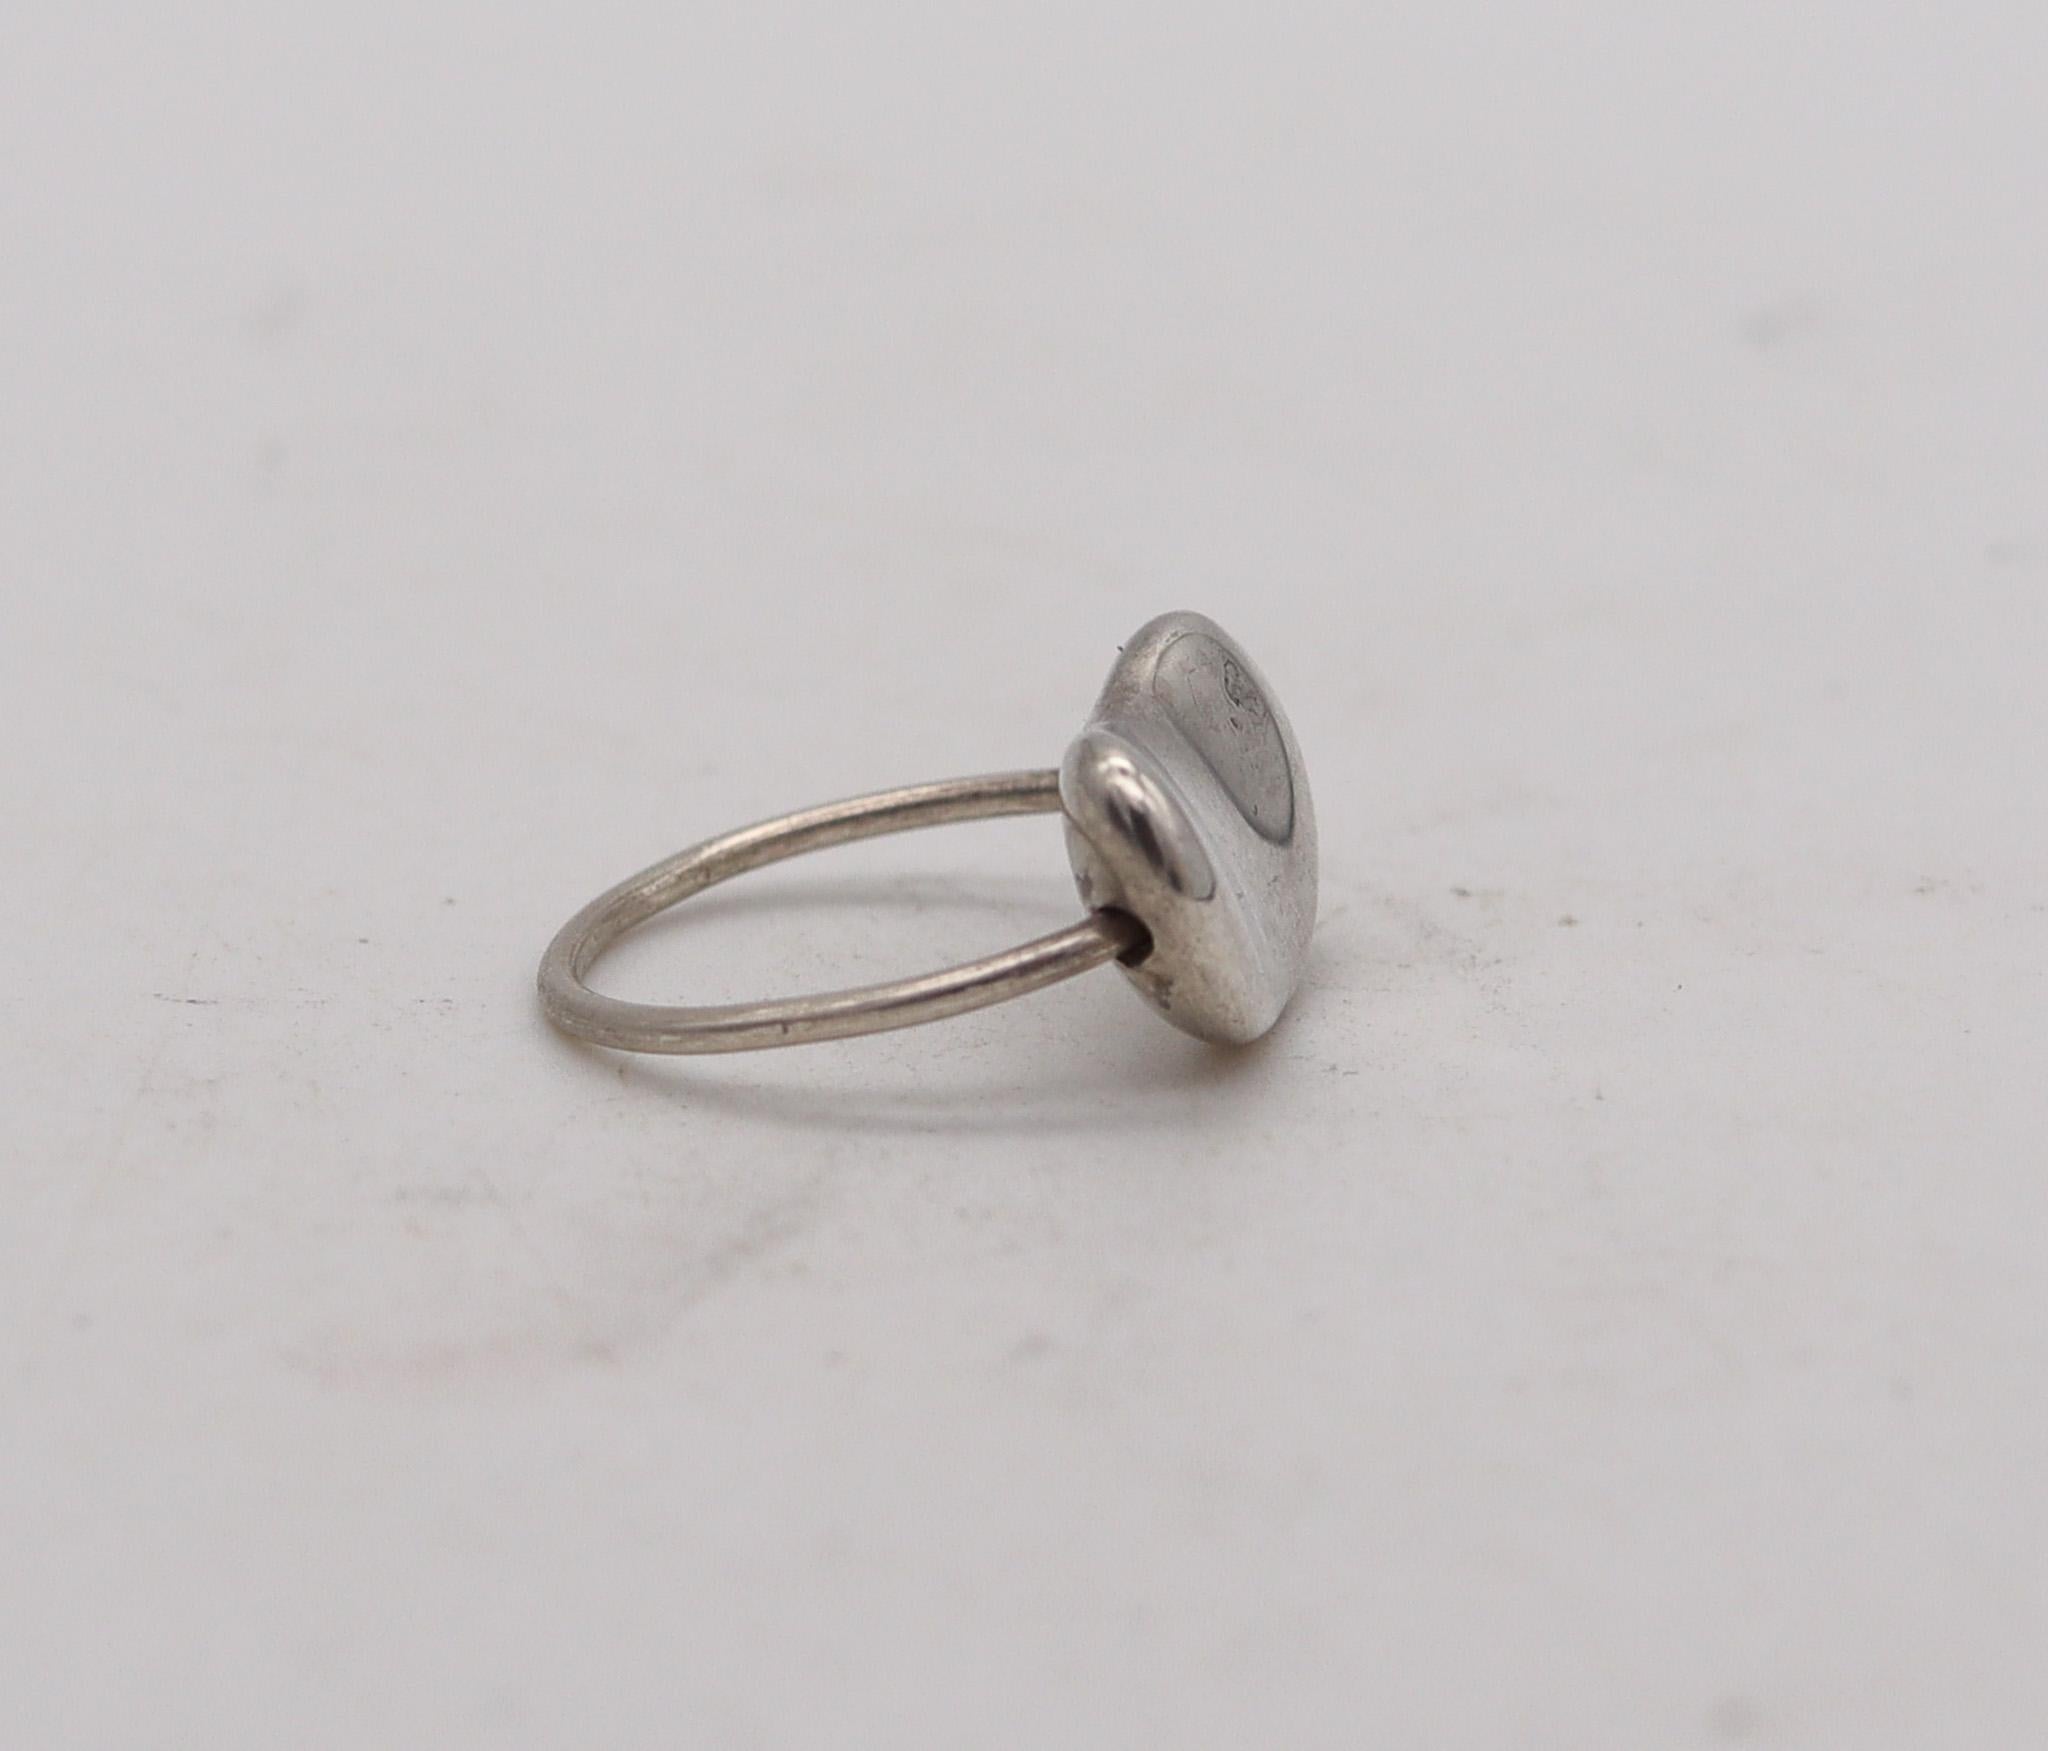 Ring aus kinetischen Bohnen, entworfen von Elsa Peretti (1940-2021) für Tiffany & Co.

Ein kultiger Bohnenring im Vintage-Stil, der 1985 in den Tiffany Studios in New York von Elsa Peretti entworfen wurde. Dieser ungewöhnliche, frei bewegliche Ring